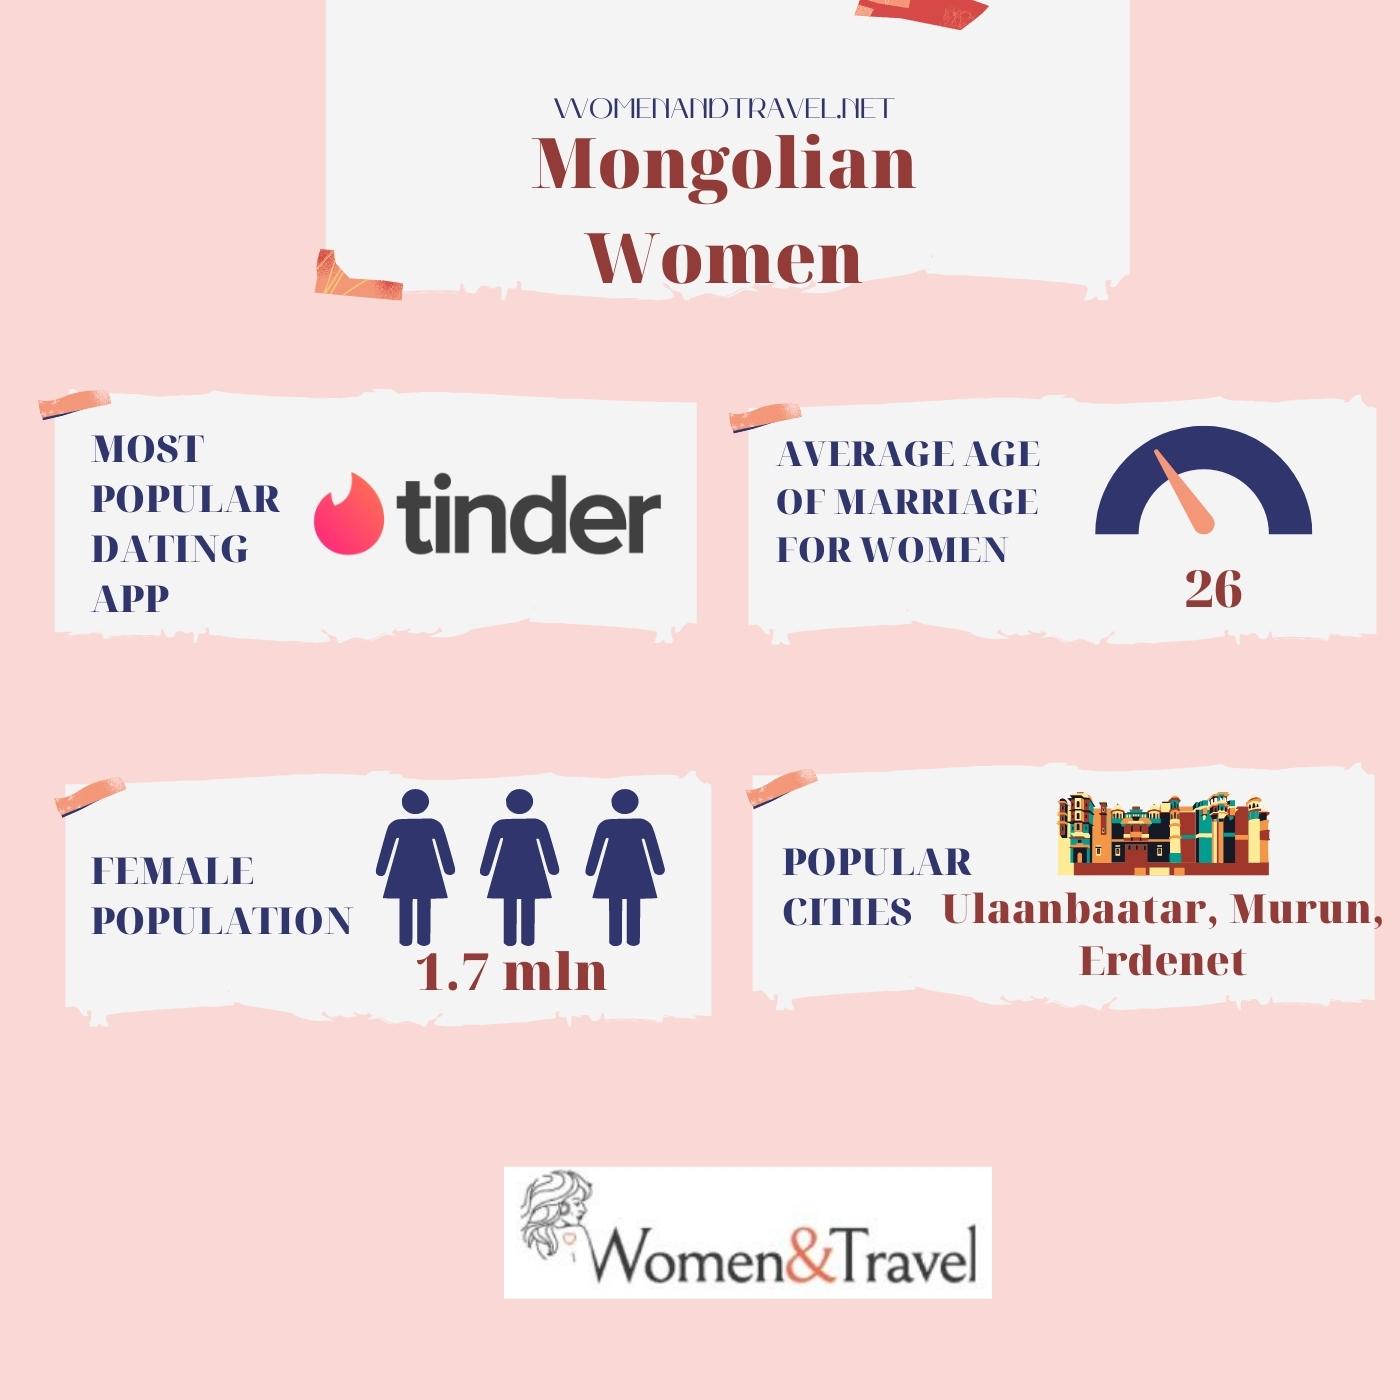 Mongolian Women infographic